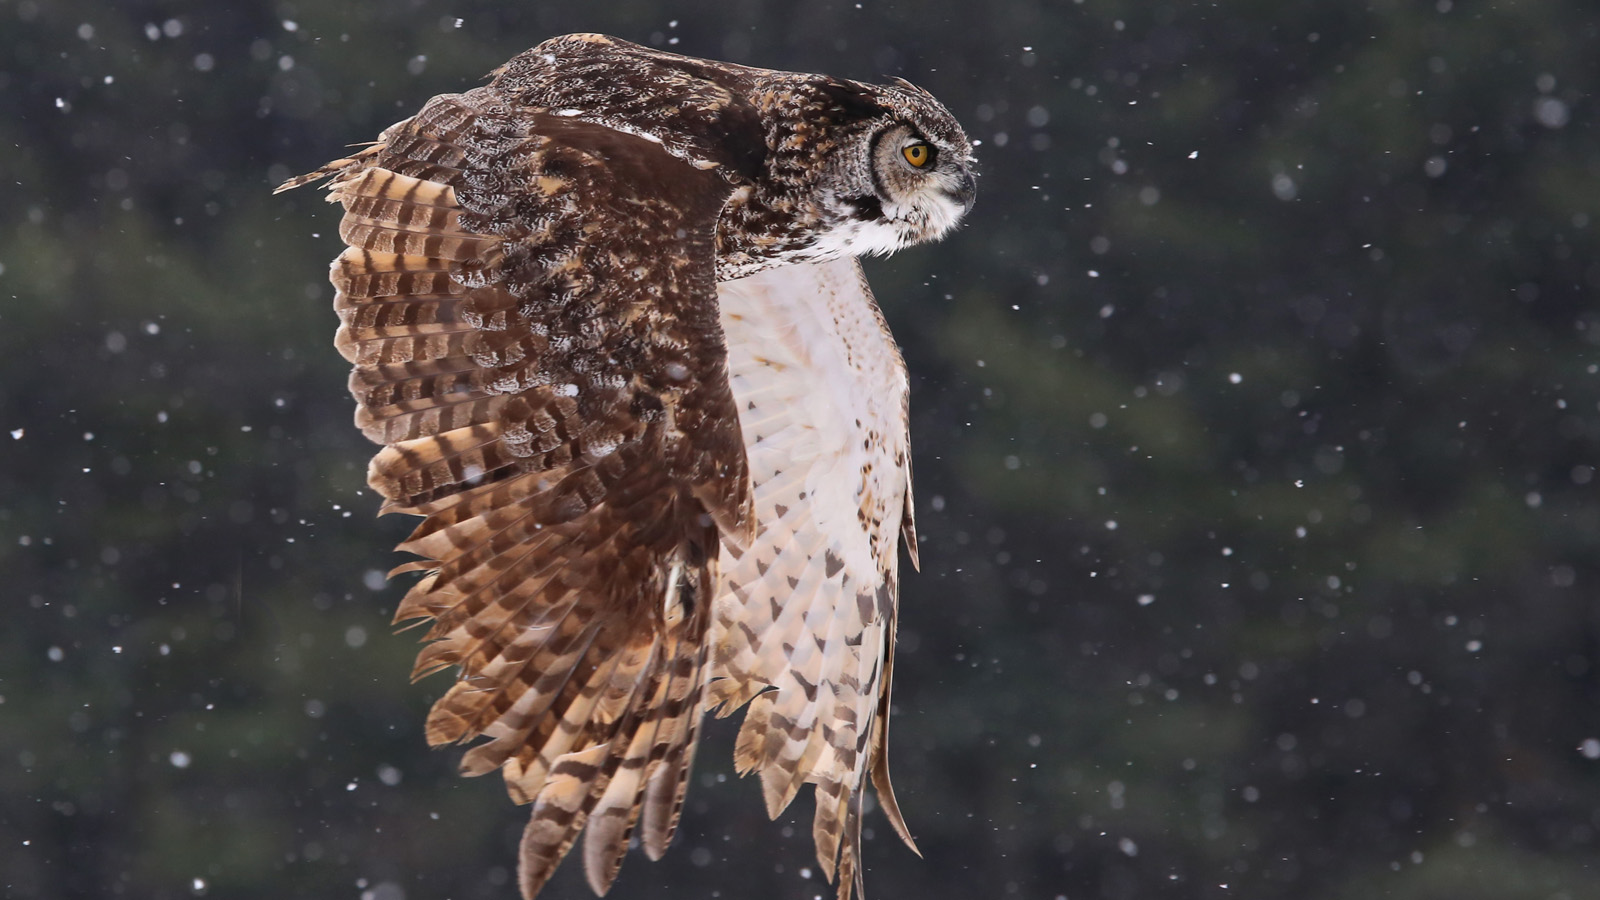 great-horned owl focused on prey